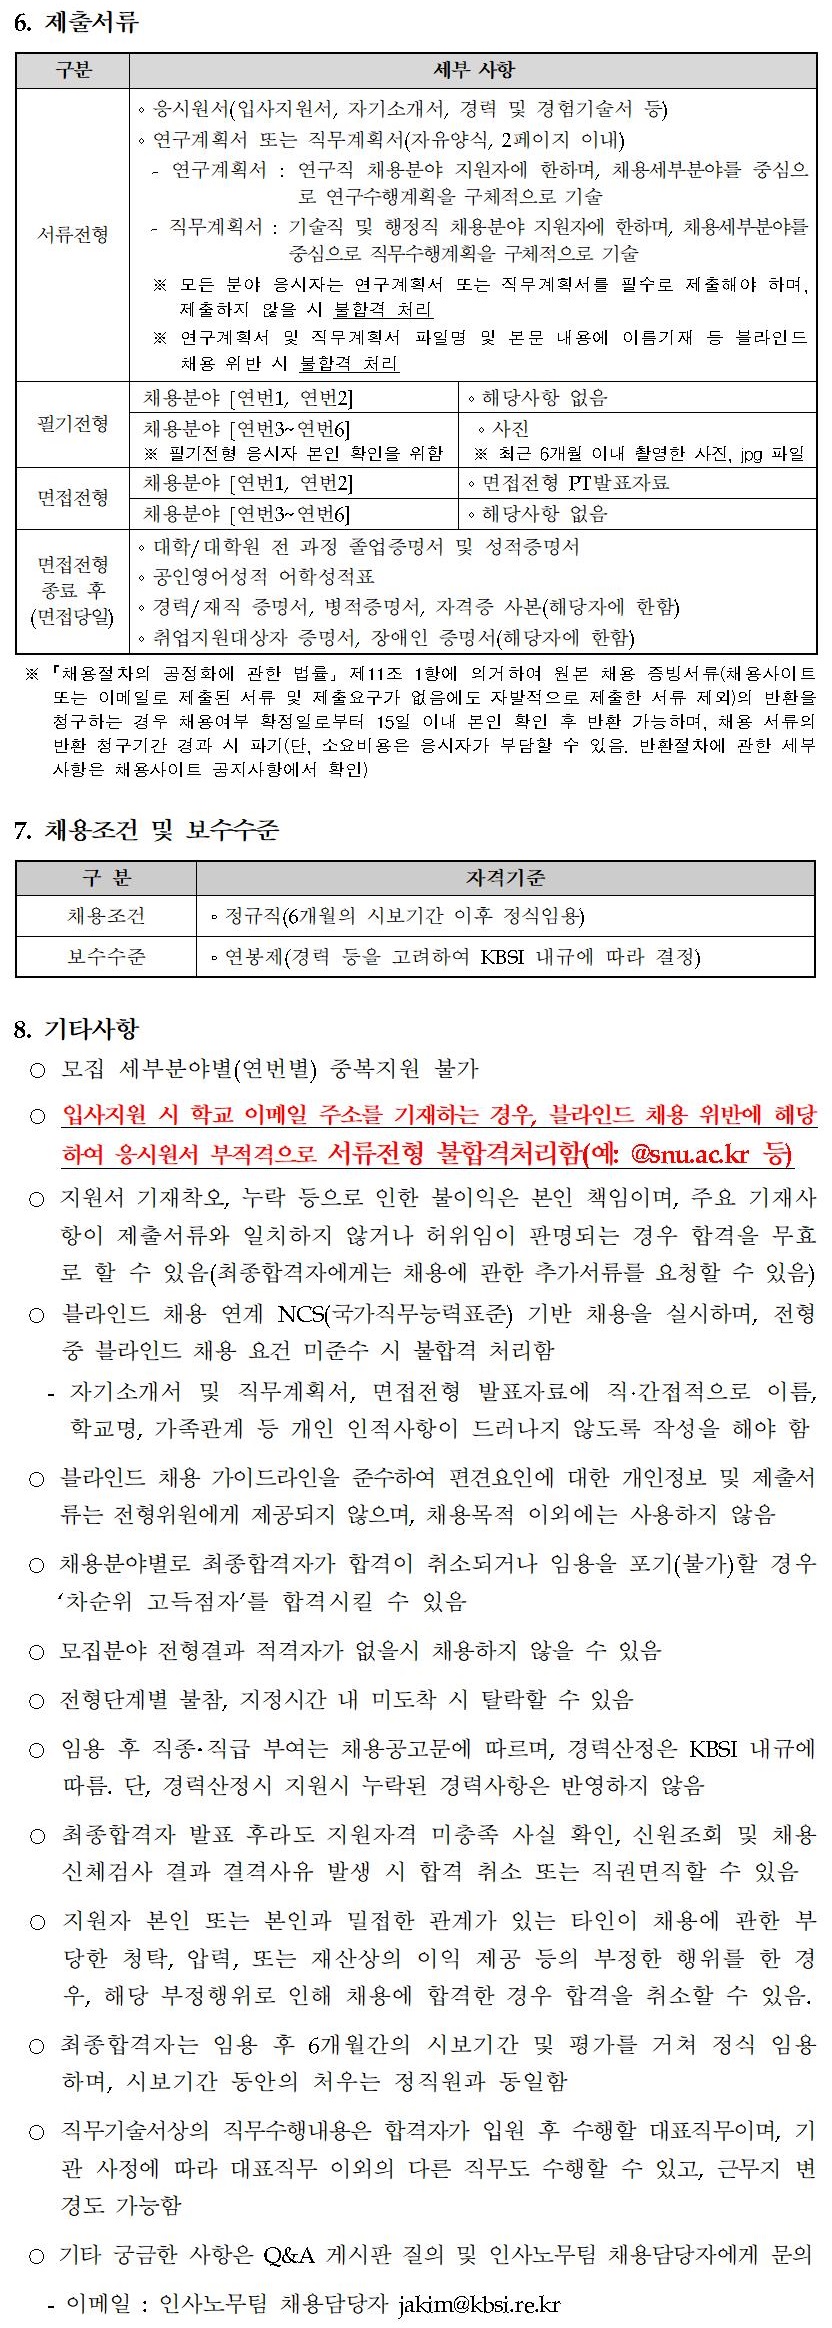 한국기초과학지원연구원 2020년 제2차 정규직 공개채용 - 자세한 내용은 붙임1_2020년 제2차 정규직 공개채용 공고문.pdf 를 다운받아 확인해 주세요.